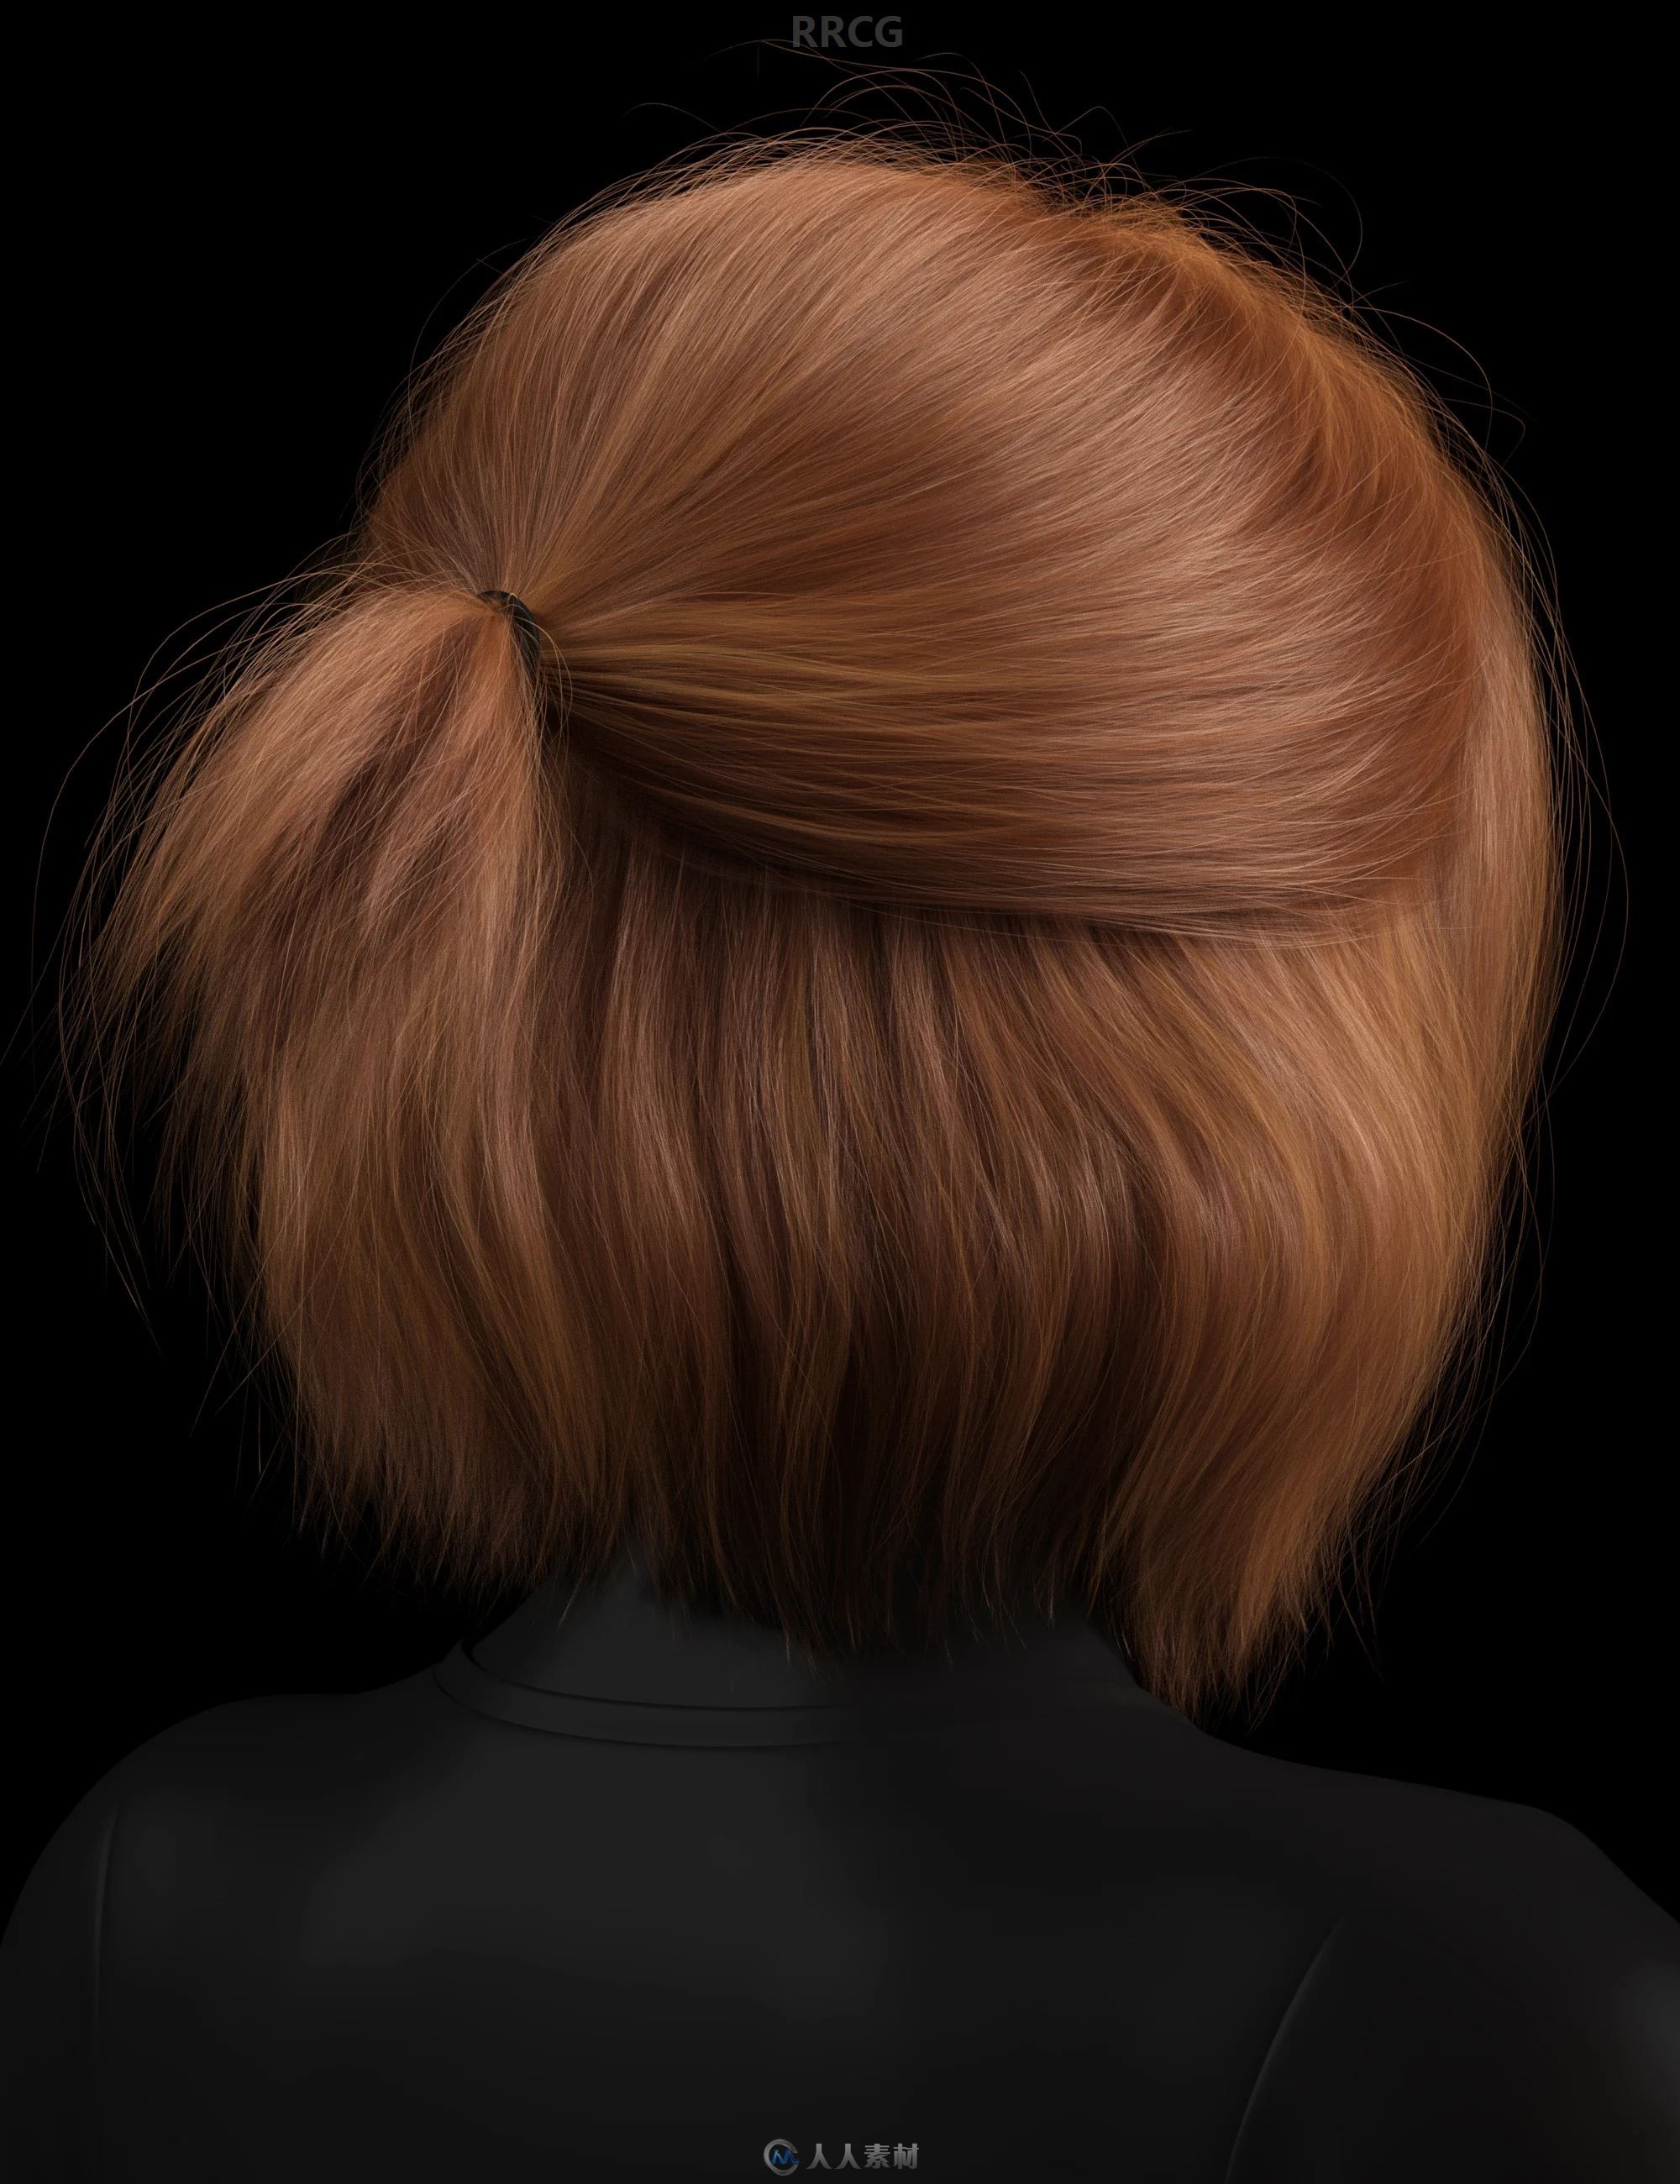 八字刘海半马尾锁骨短发女性不同发色发型3D模型合集